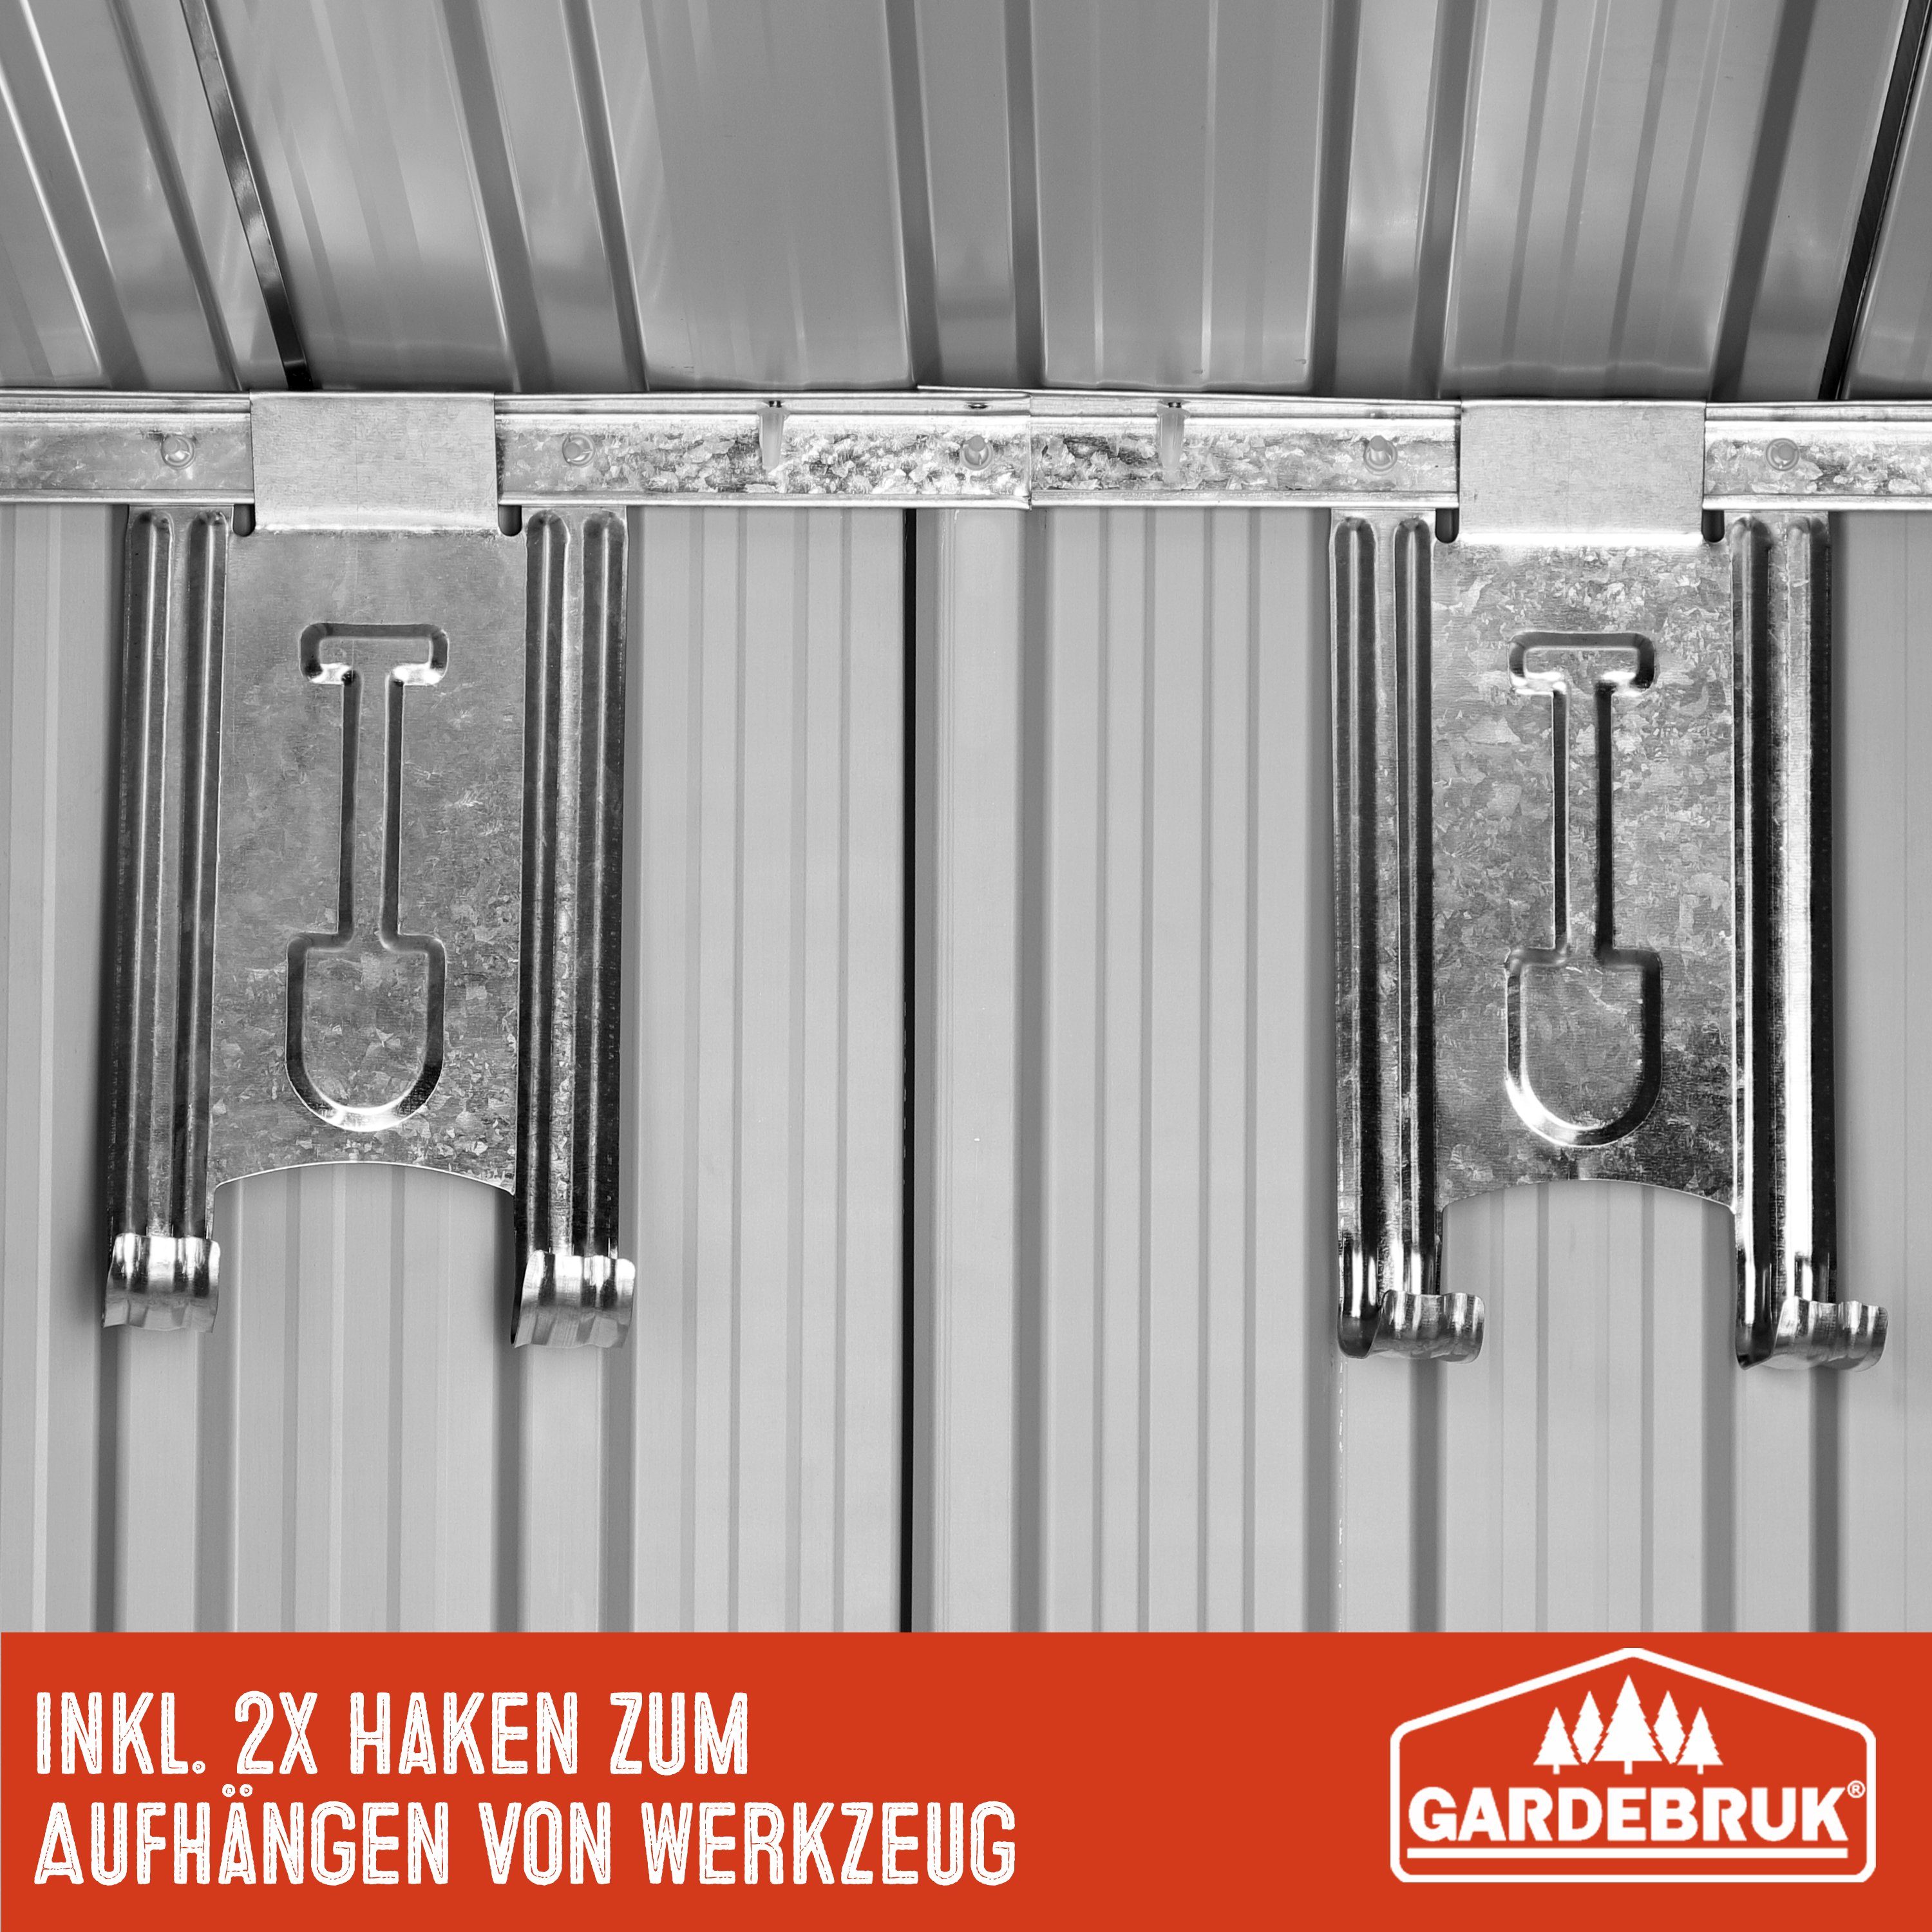 196x122x182cm Grün Fundament mit Gardebruk Metall Schiebetür 2m² L Gerätehaus,